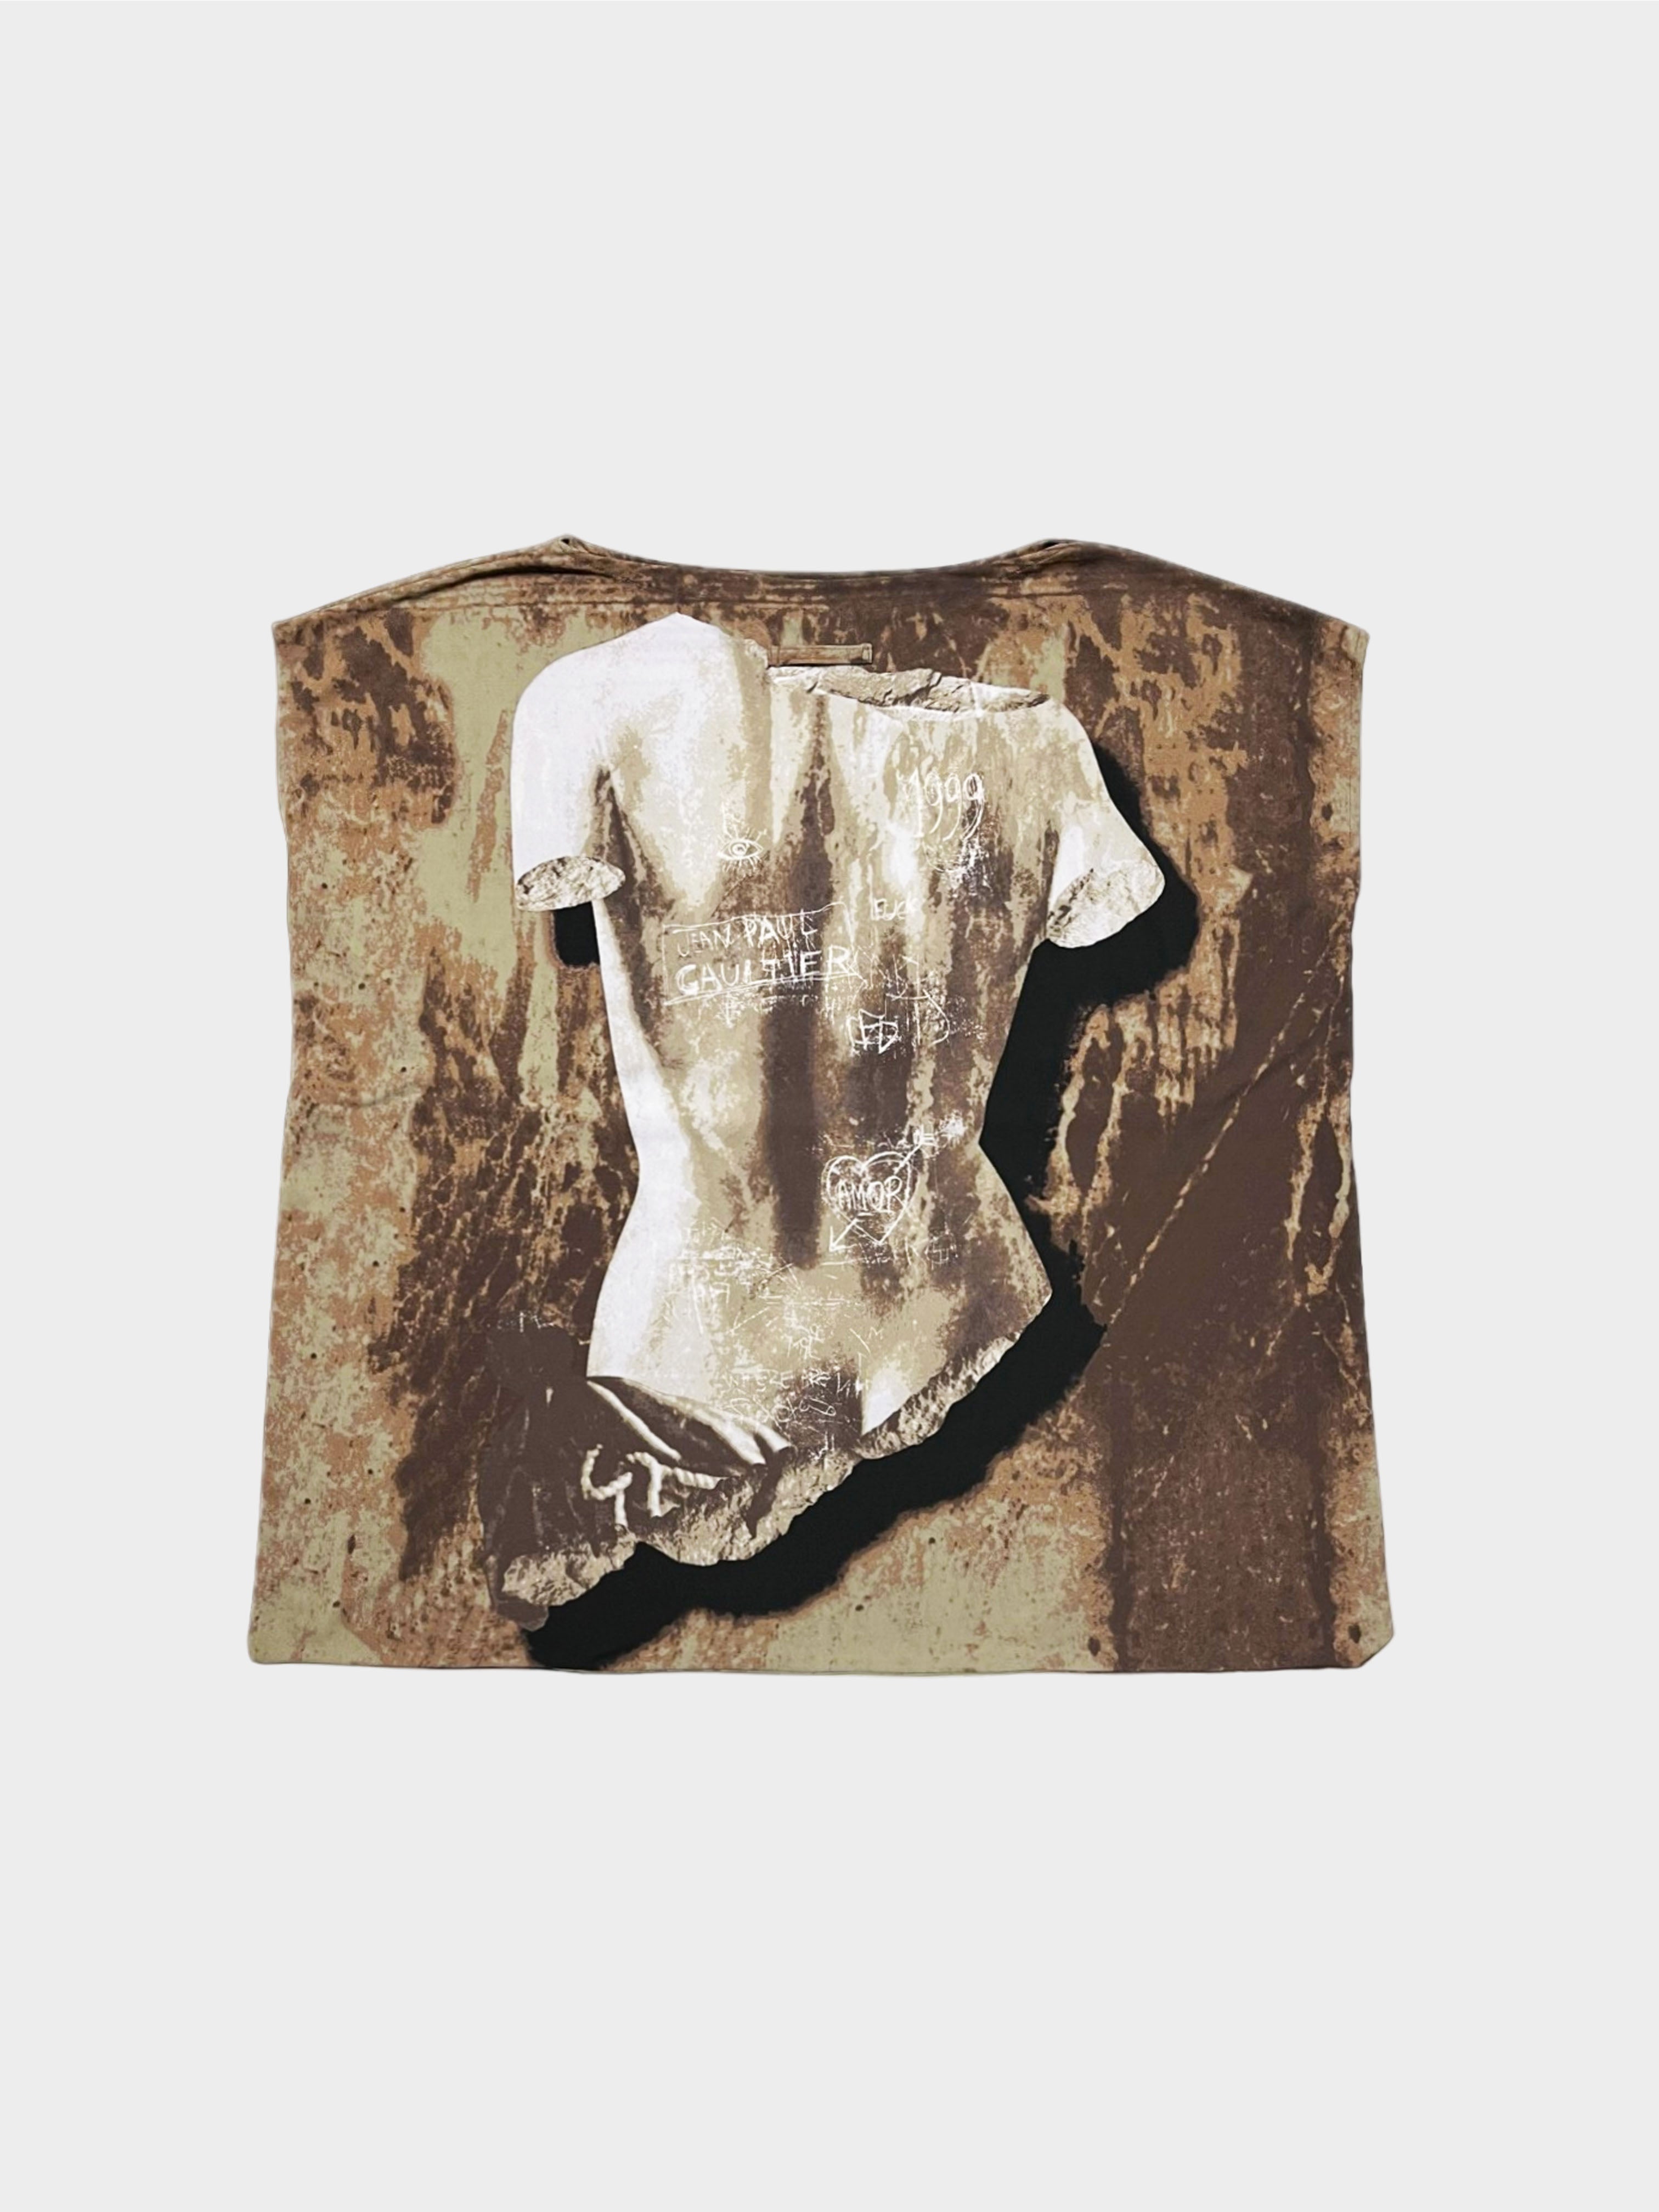 Jean Paul Gaultier SS 1999 Rare Venus de Milo Cutout Shirt